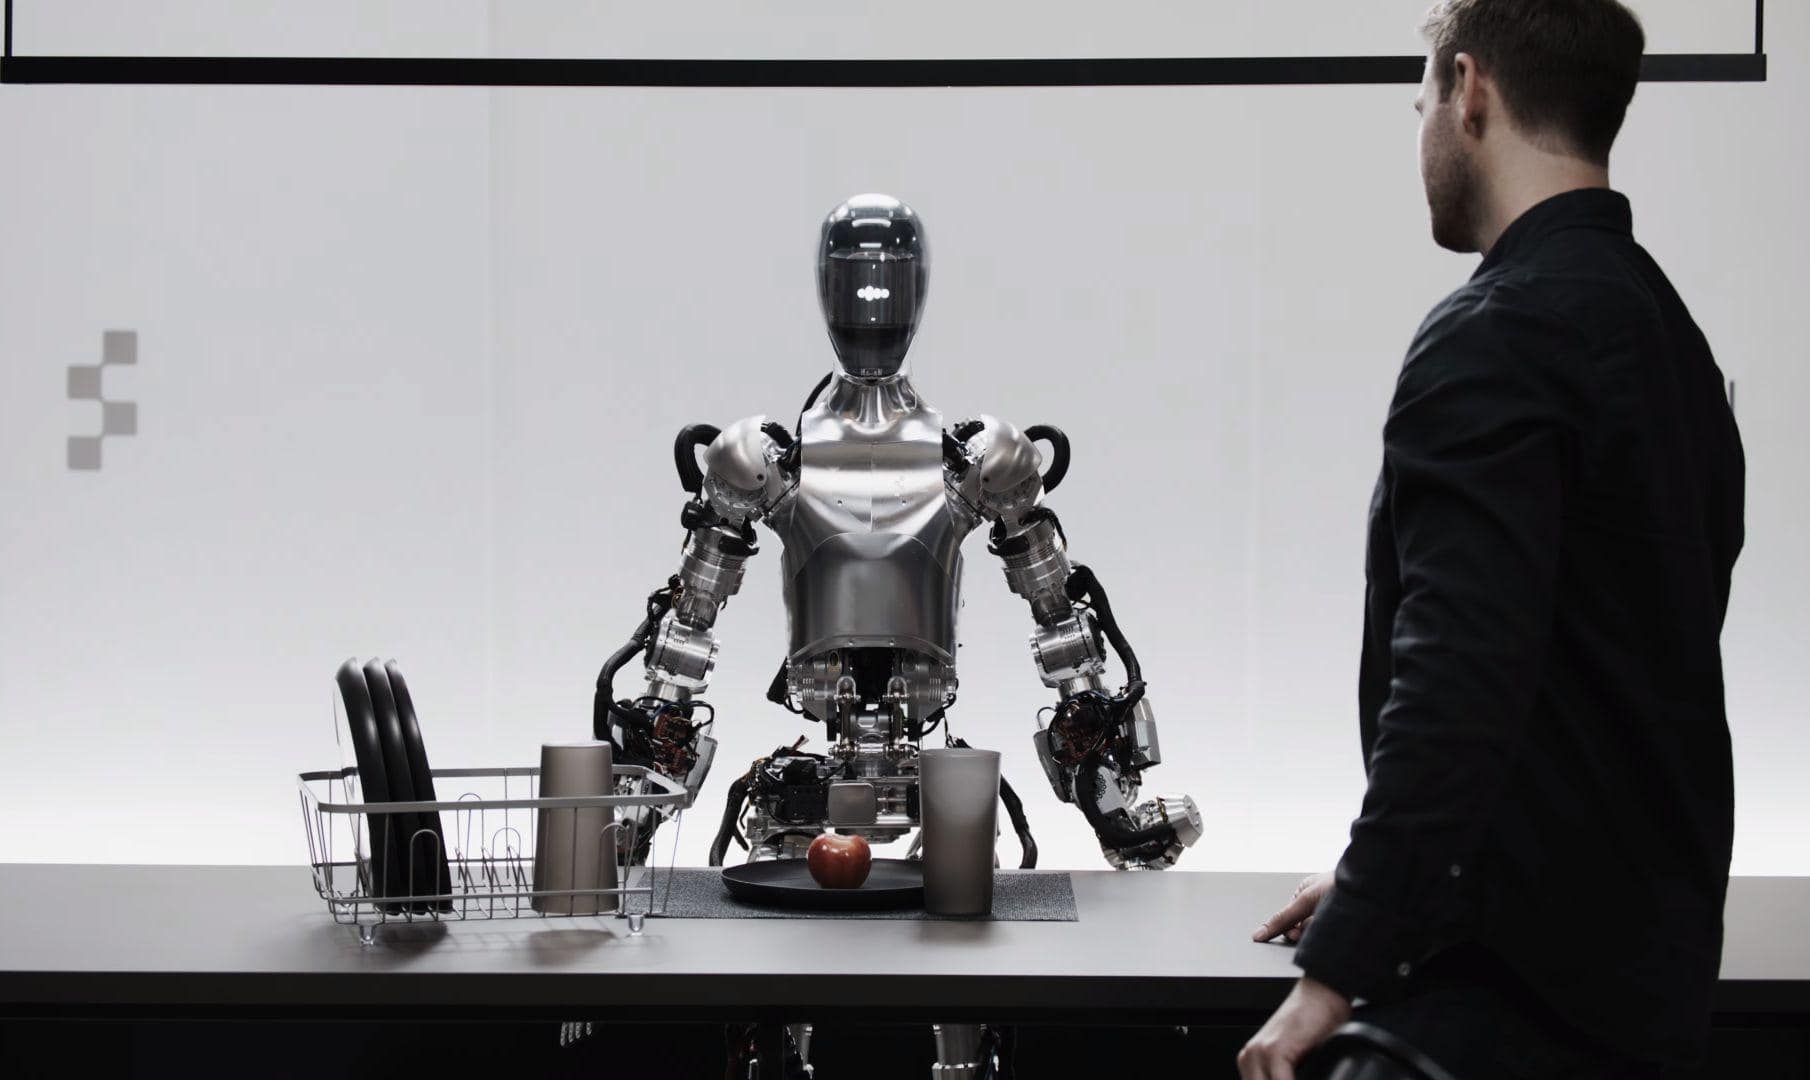 FigureとOpenAIのコラボレーションがリアルタイムで会話し指示通り作業を行うロボットを実現しつつある